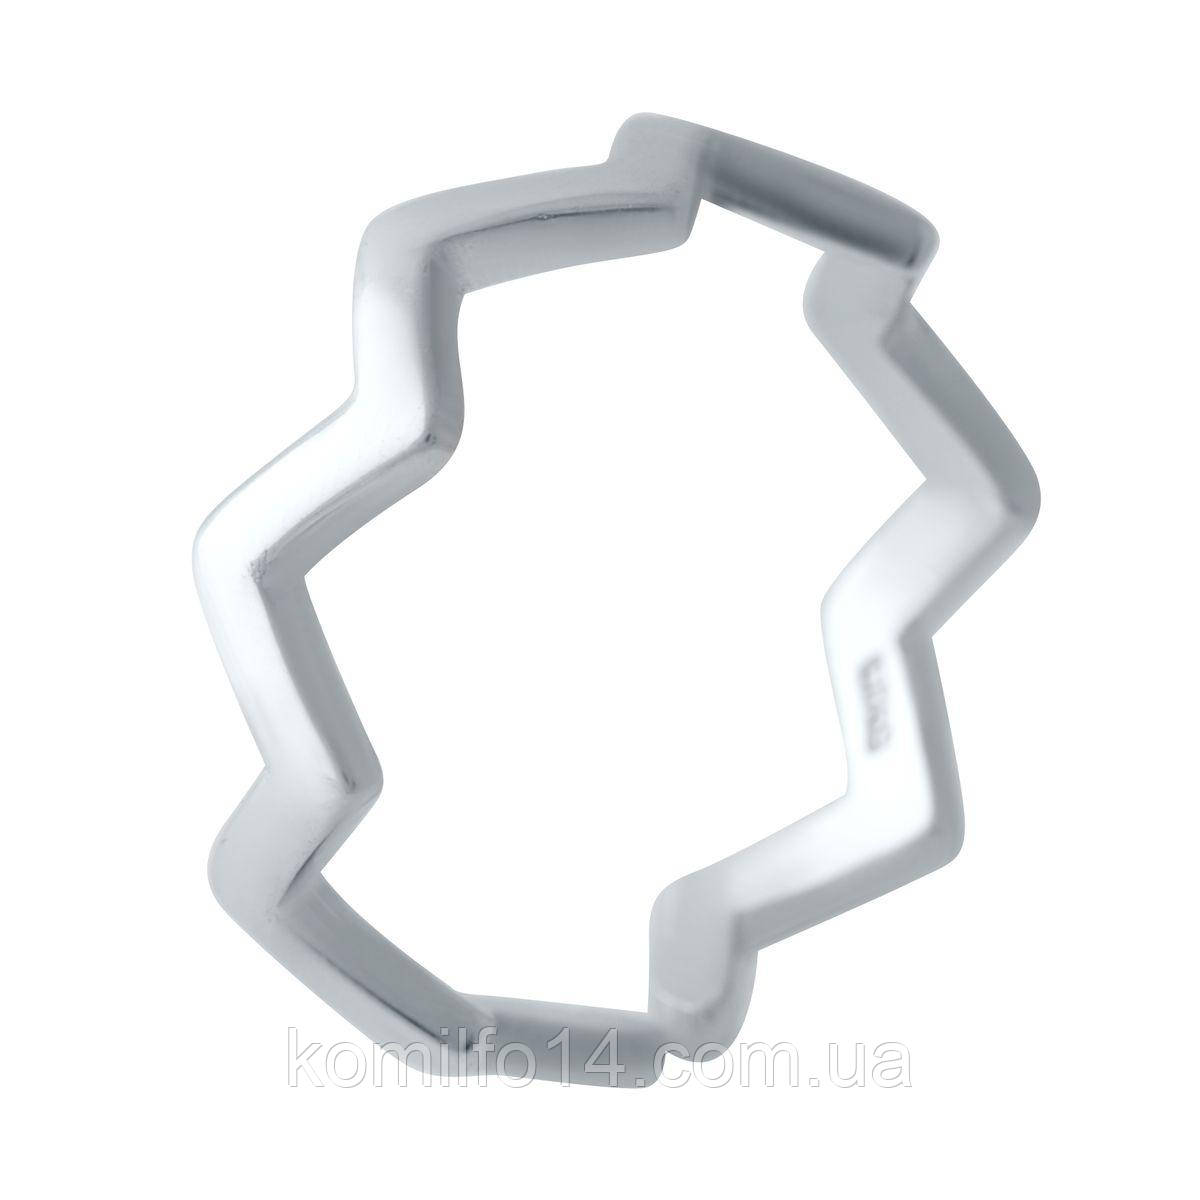 Срібне кільце Komilfo з без каменів, вага виробу 1,58 г (2029564) adjustable розмір